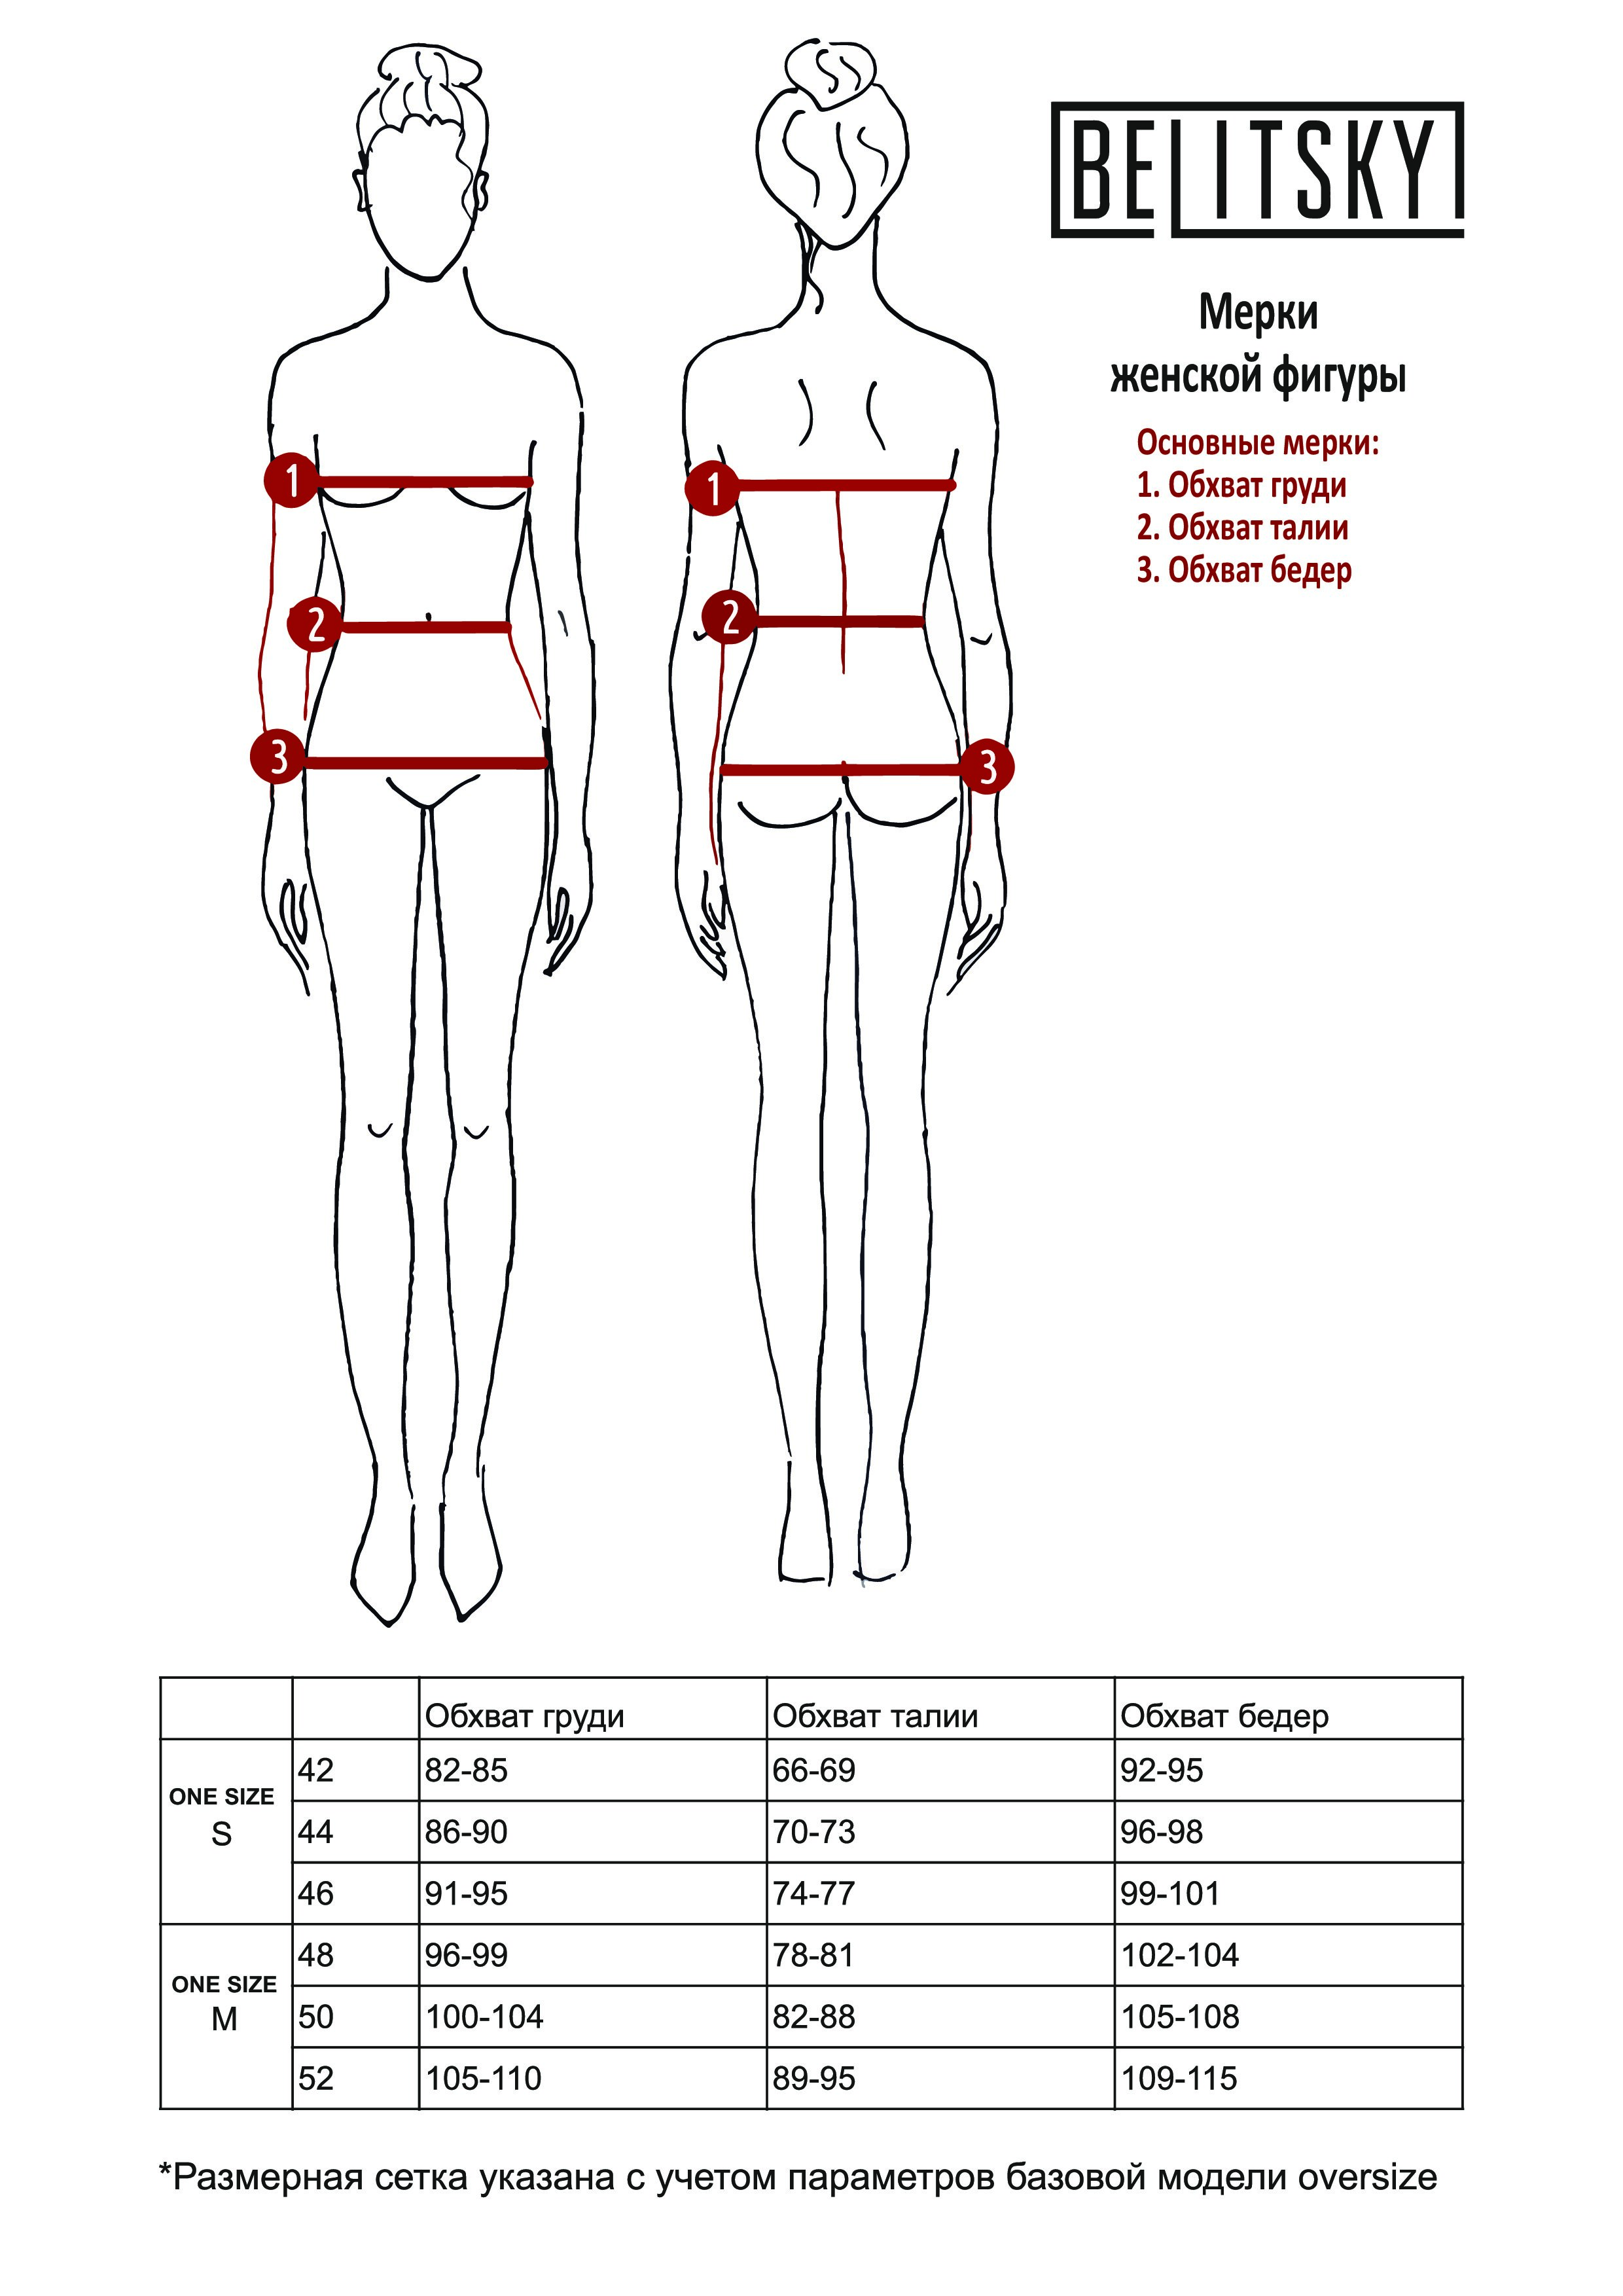 как правильно измерять обхват груди у женщин фото 90